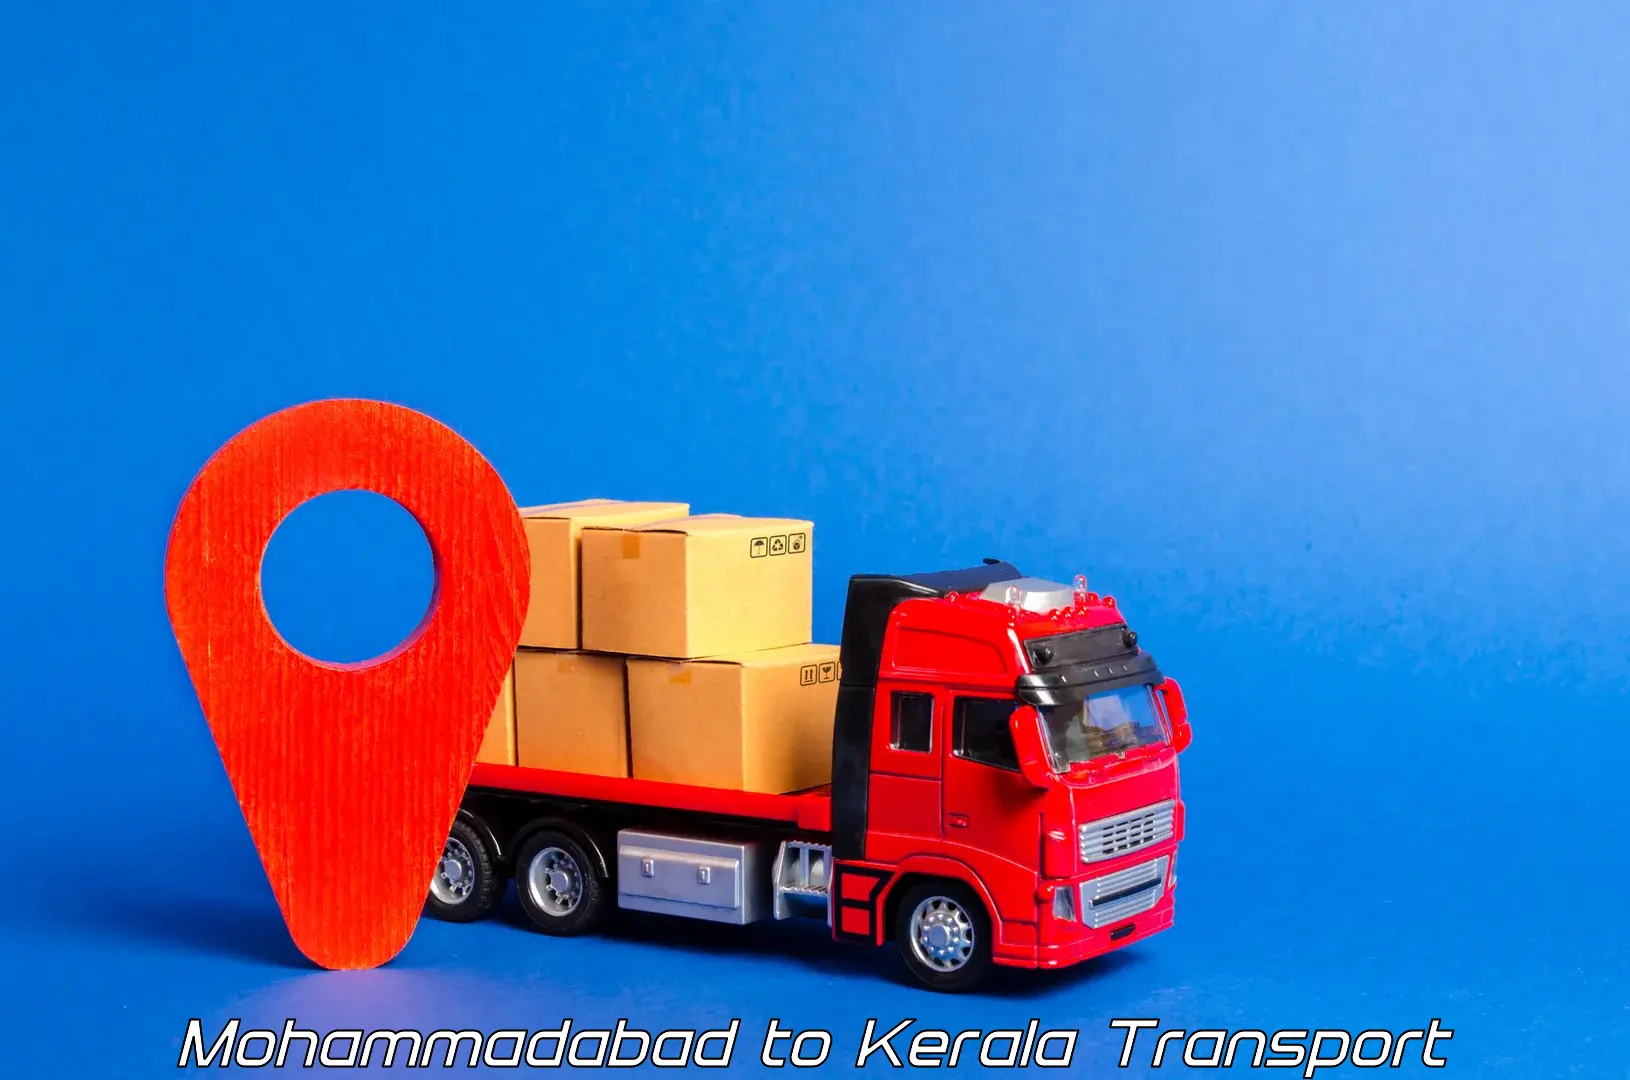 Daily transport service Mohammadabad to Kerala